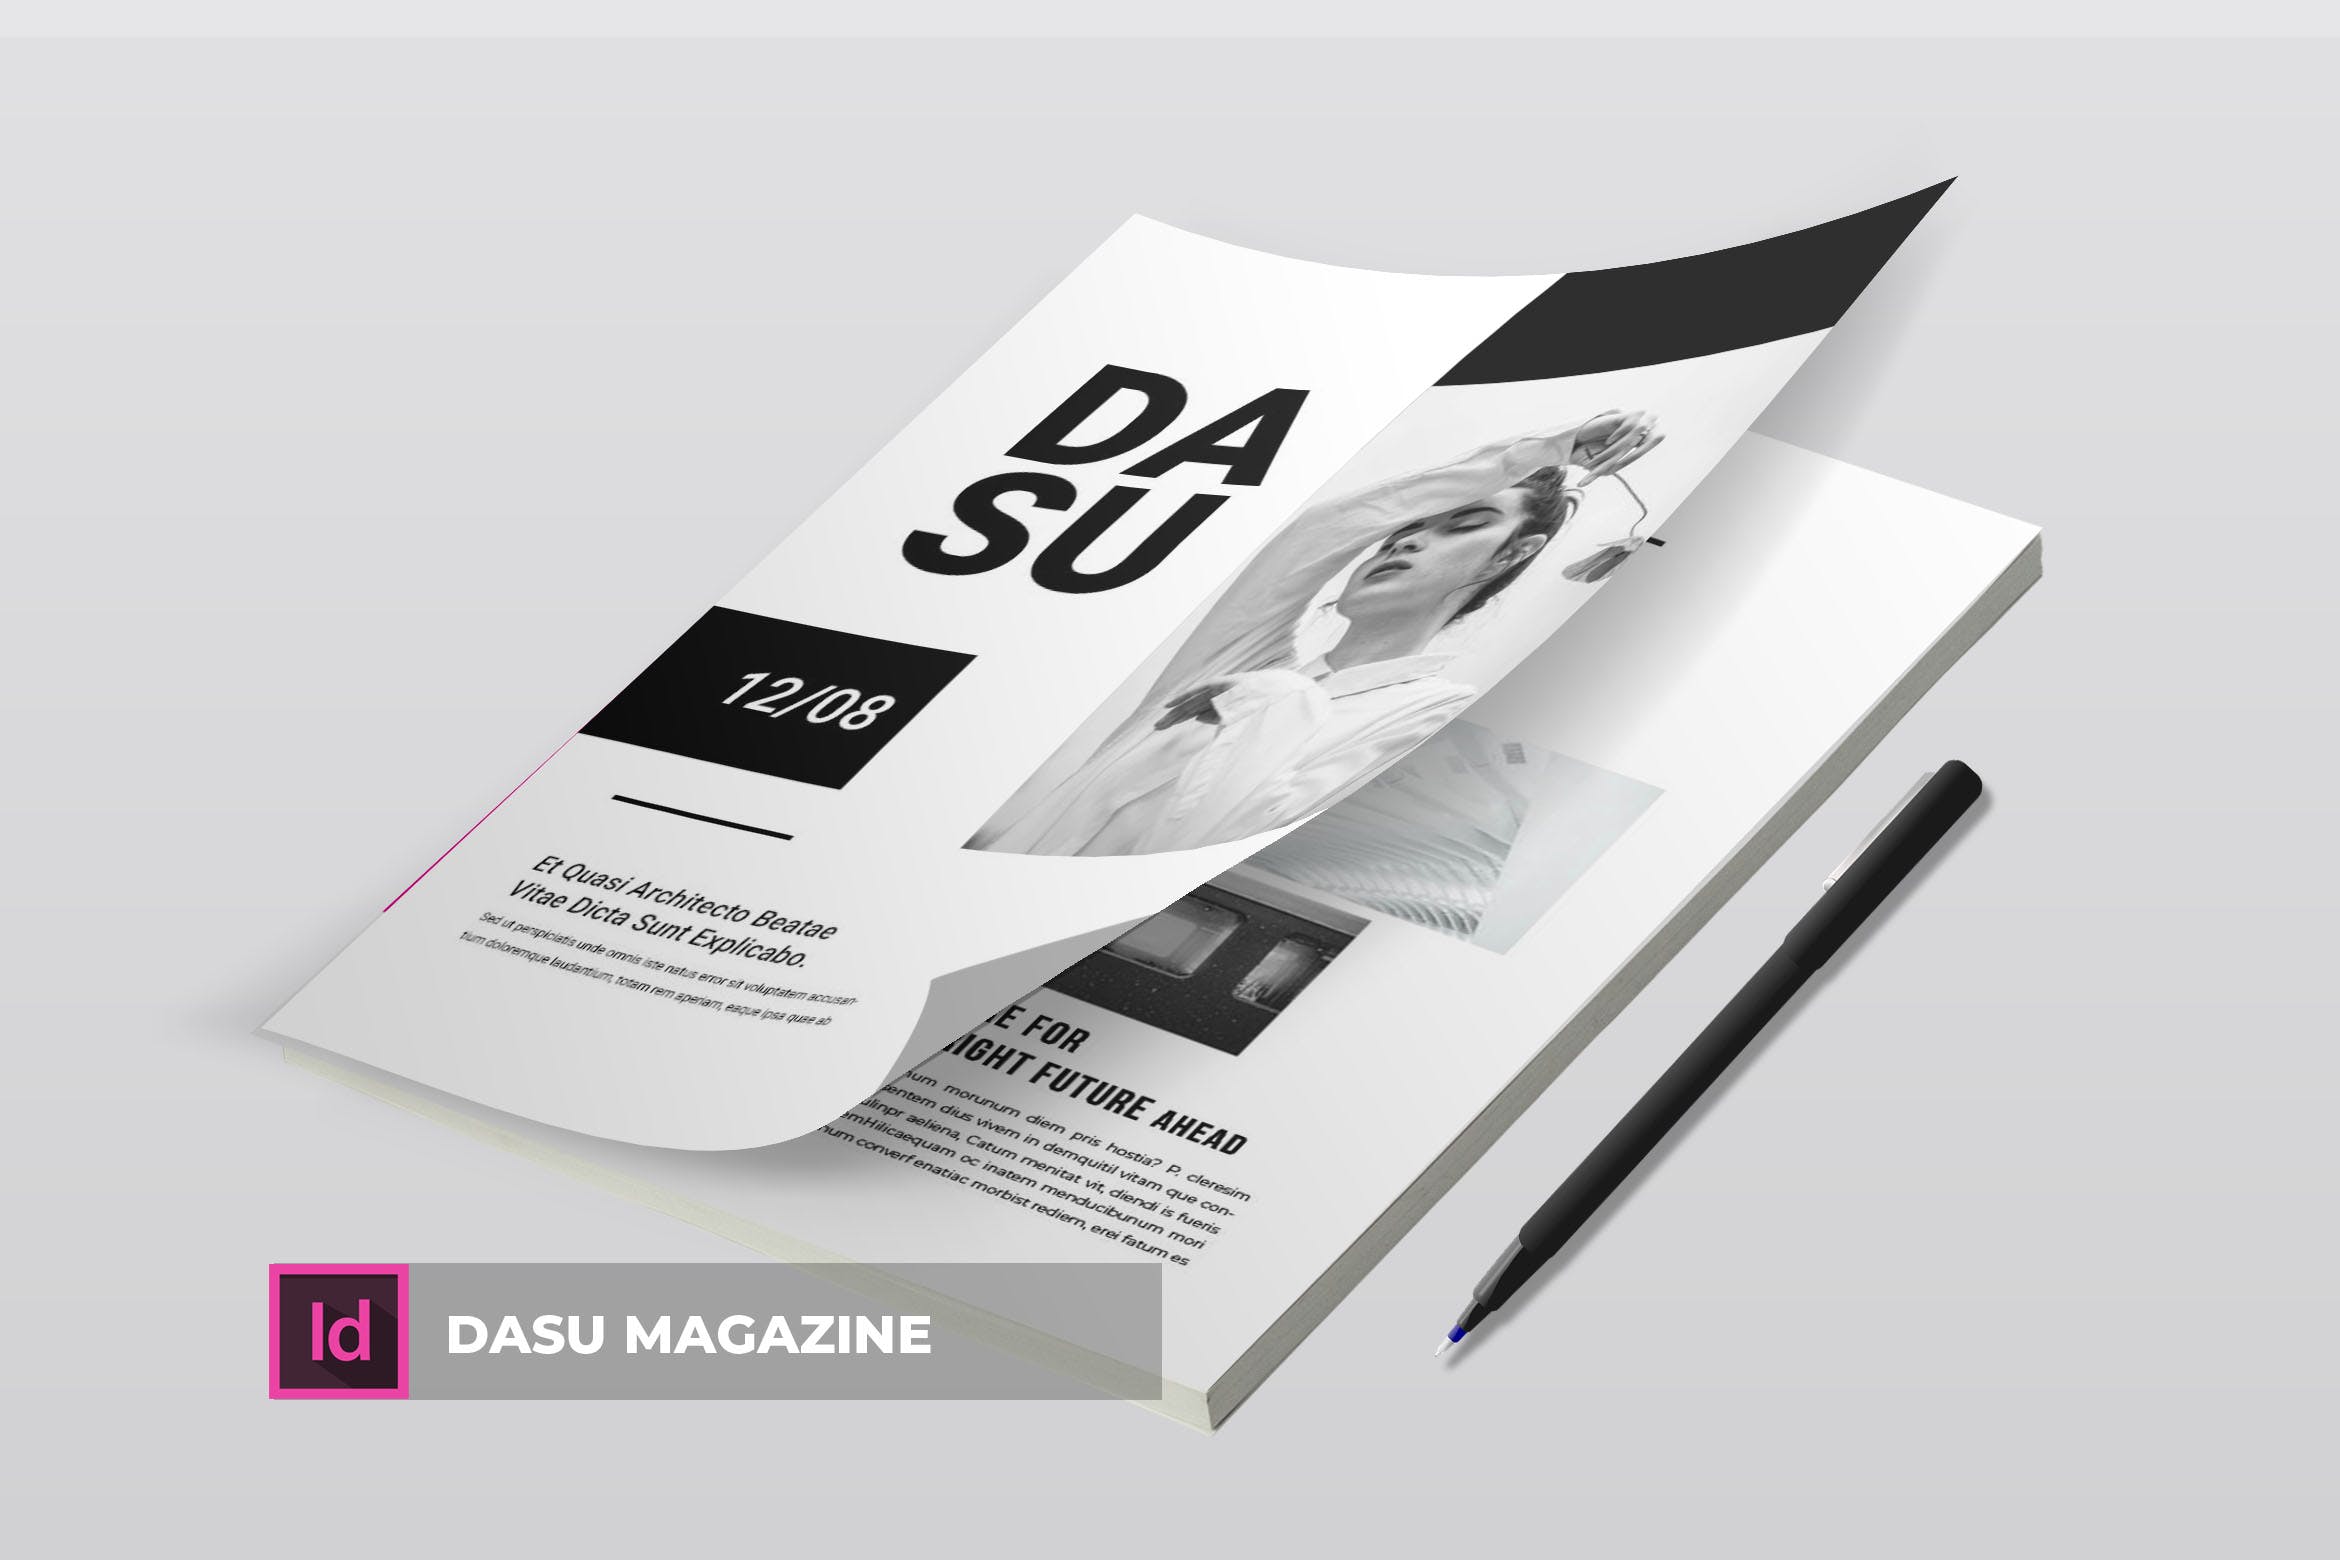 摄影艺术/时装设计主题蚂蚁素材精选杂志排版设计模板 Dasu | Magazine Template插图